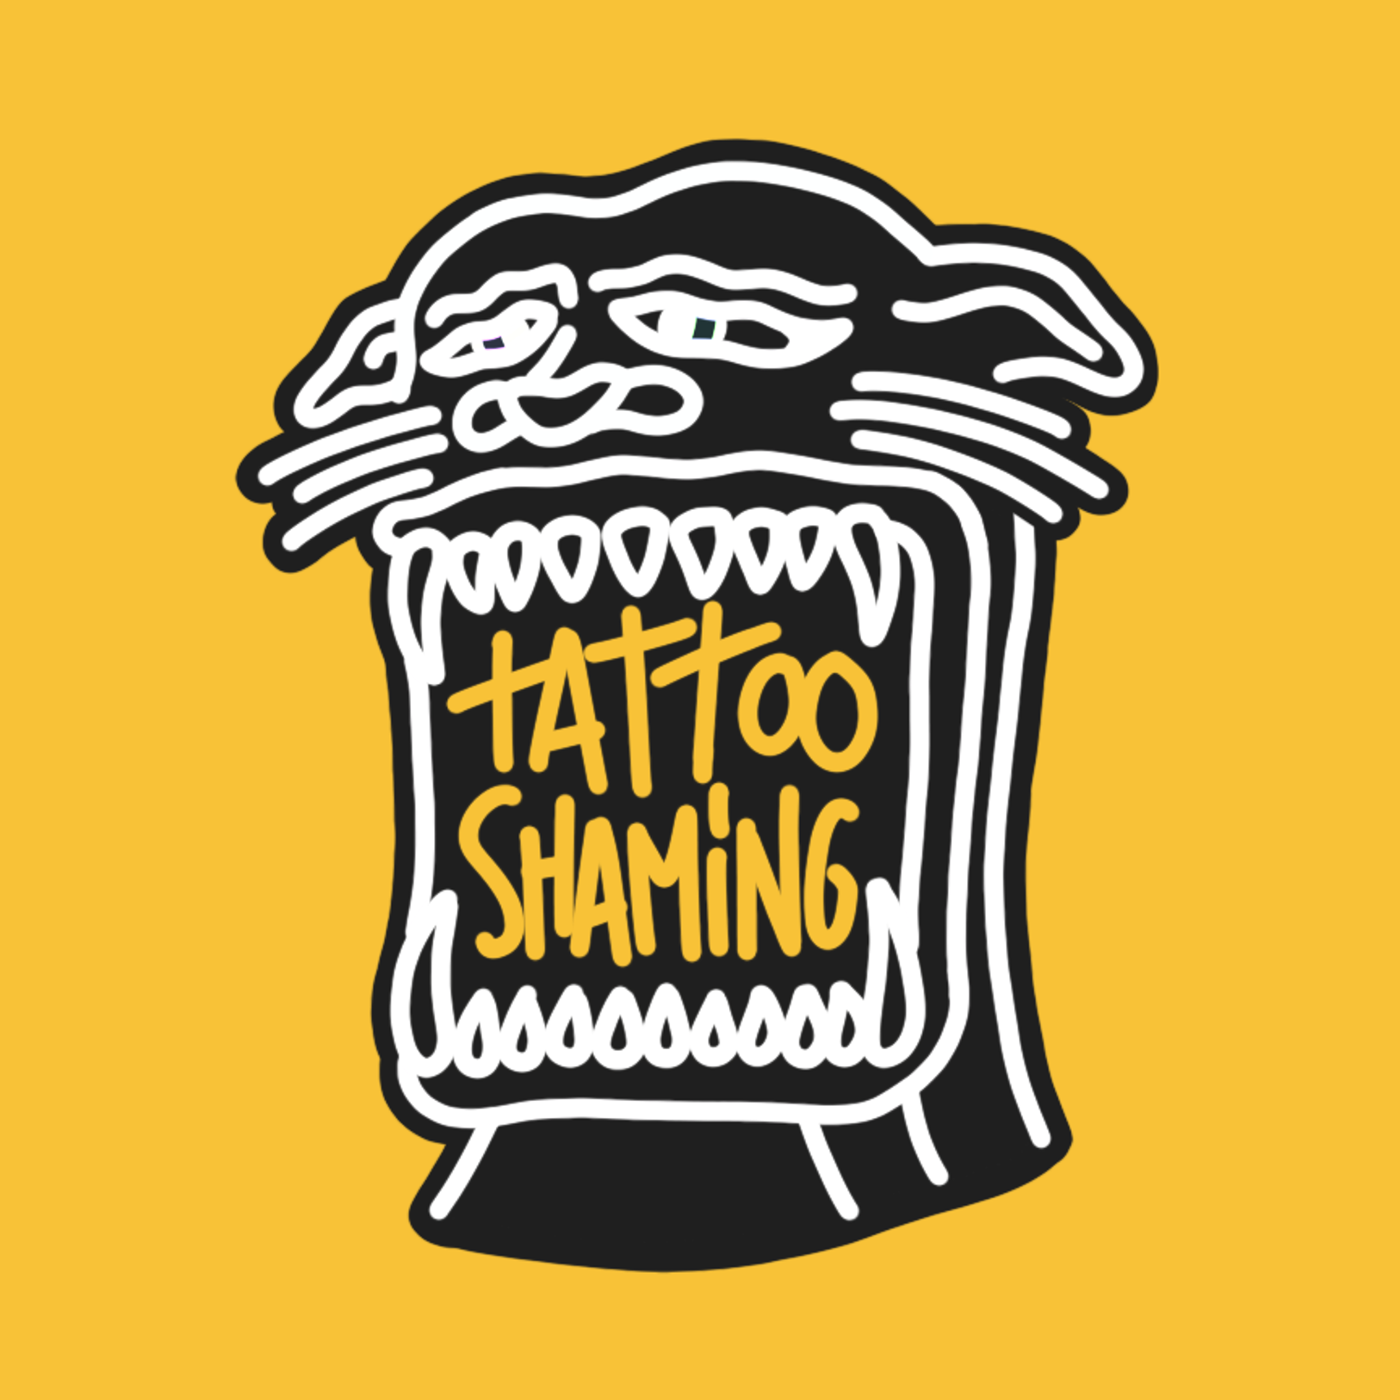 podcast tattoo shaming